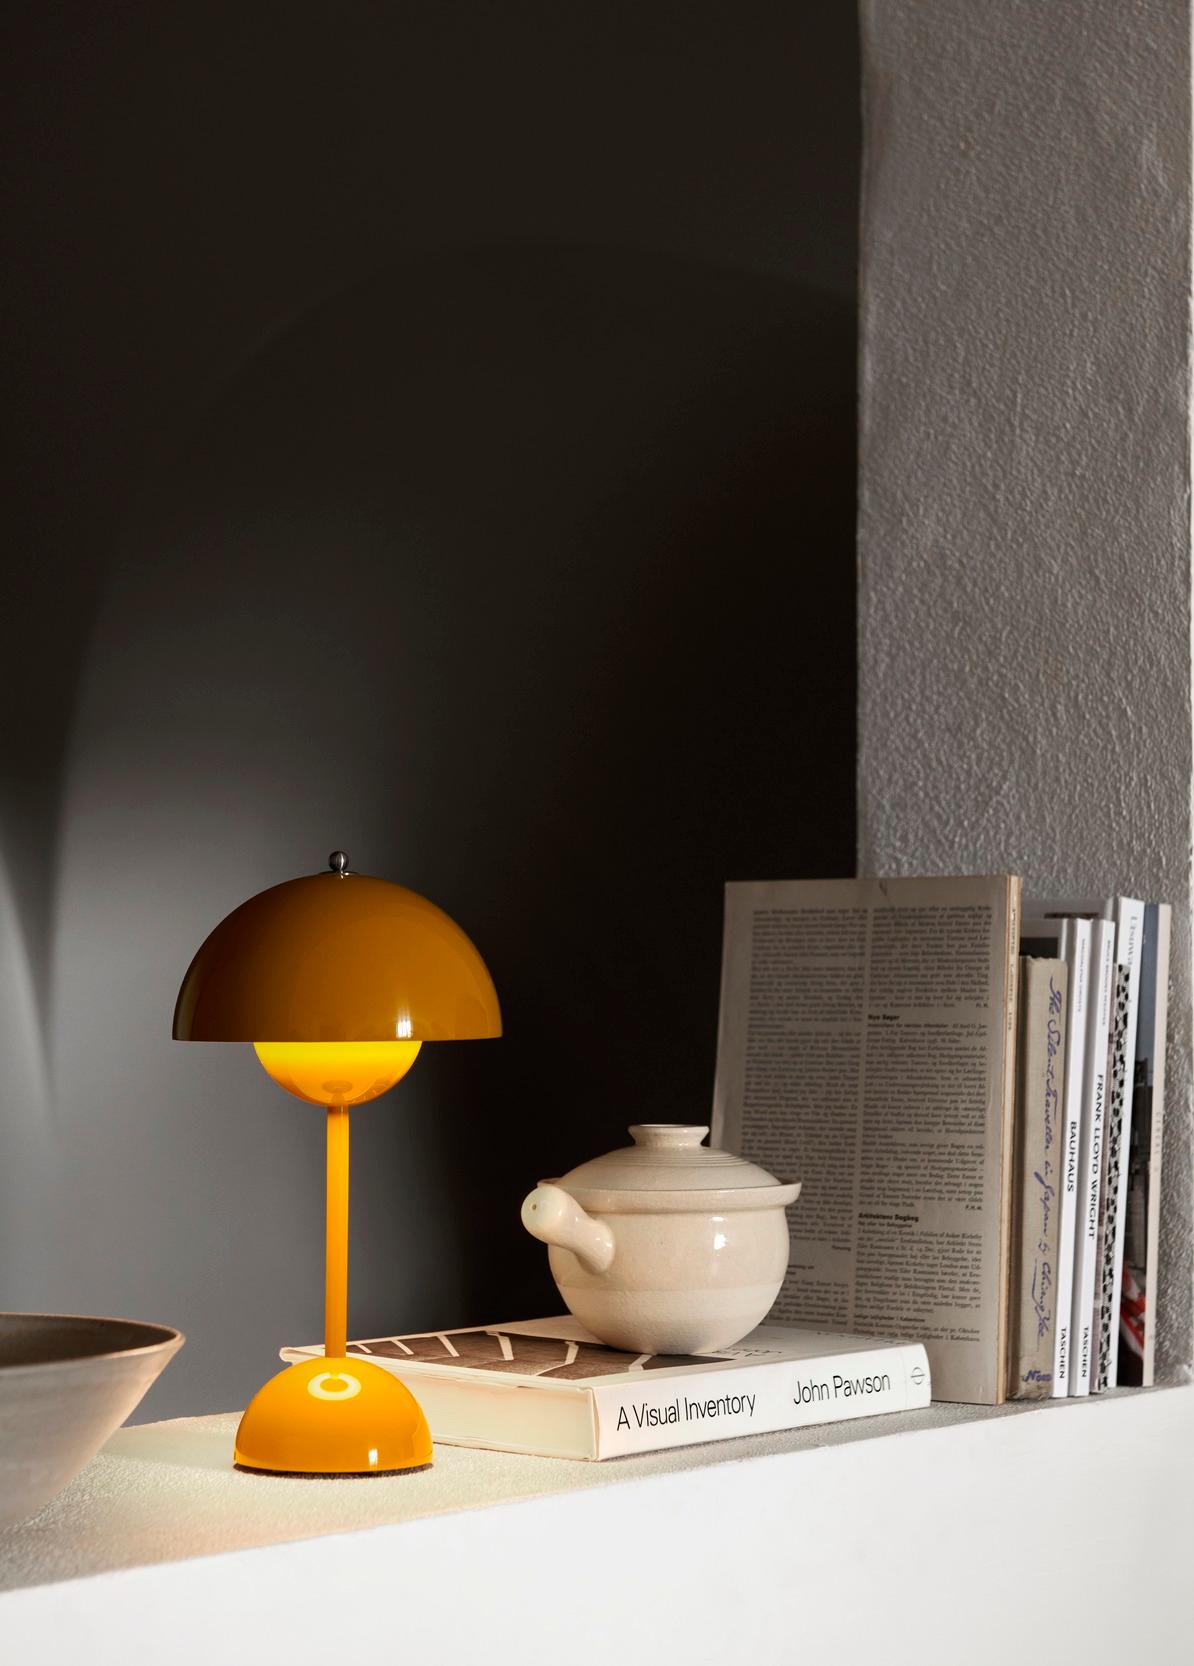 Die ikonische Form des Flowerpot von Verner Panton, die zu den normgebenden dänischen Entwürfen der 1960er Jahre gehört, ist in einer Serie erhältlich, die mittlerweile aus sieben verschiedenen Modellen besteht. In enger Collaboration mit der